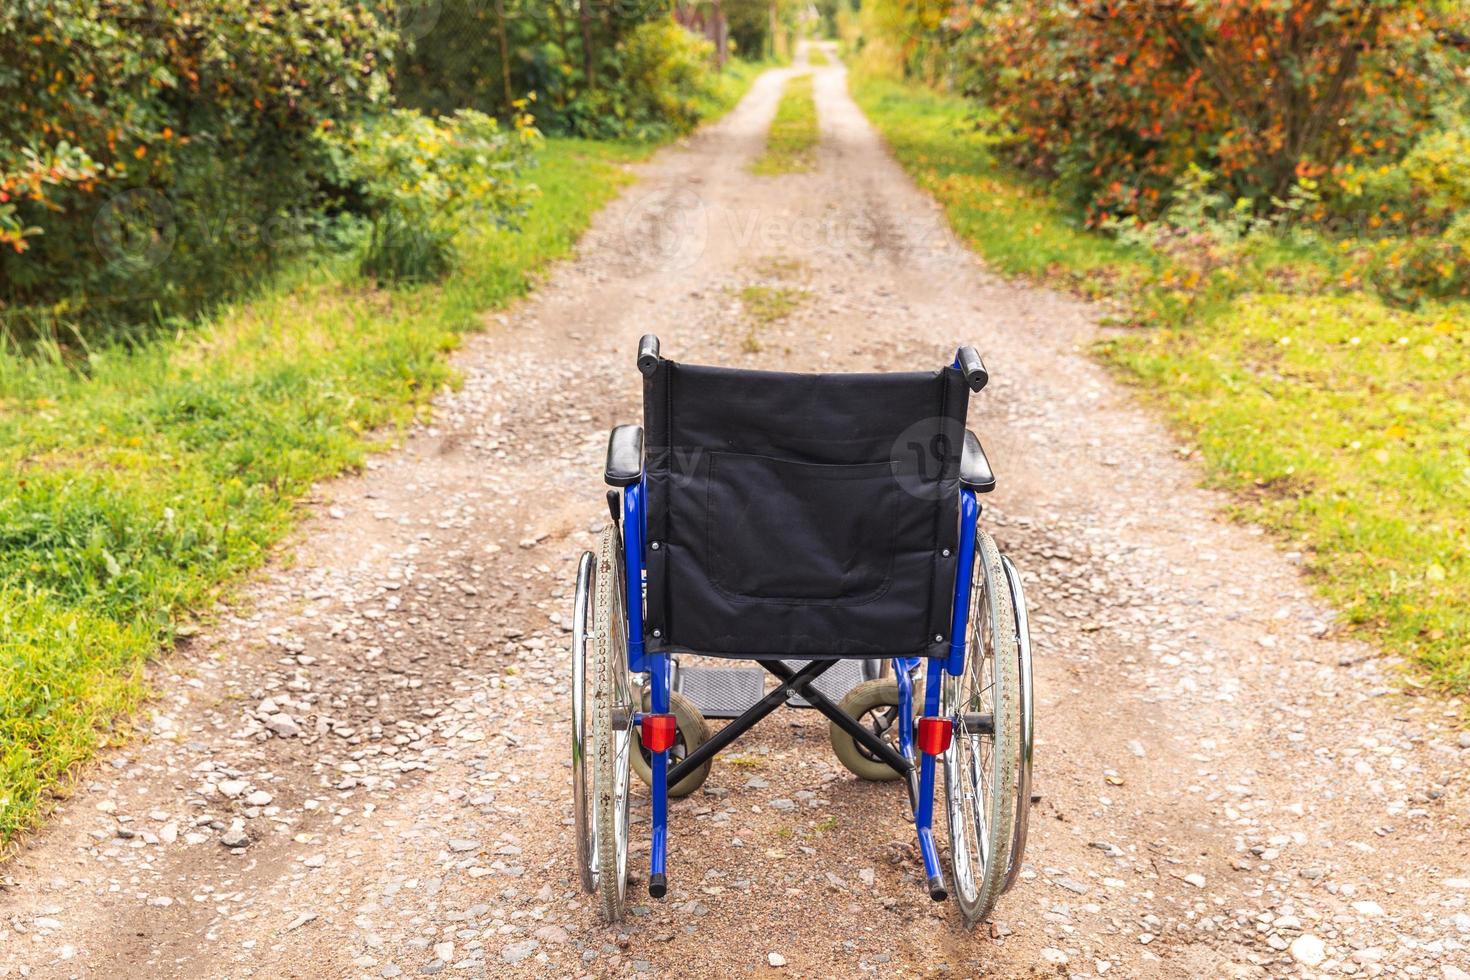 sedia a rotelle vuota in piedi sulla strada in attesa di servizi per i pazienti. sedia a rotelle per persone con disabilità parcheggiate all'aperto. accessibile a persone con disabilità. concetto medico sanitario. foto